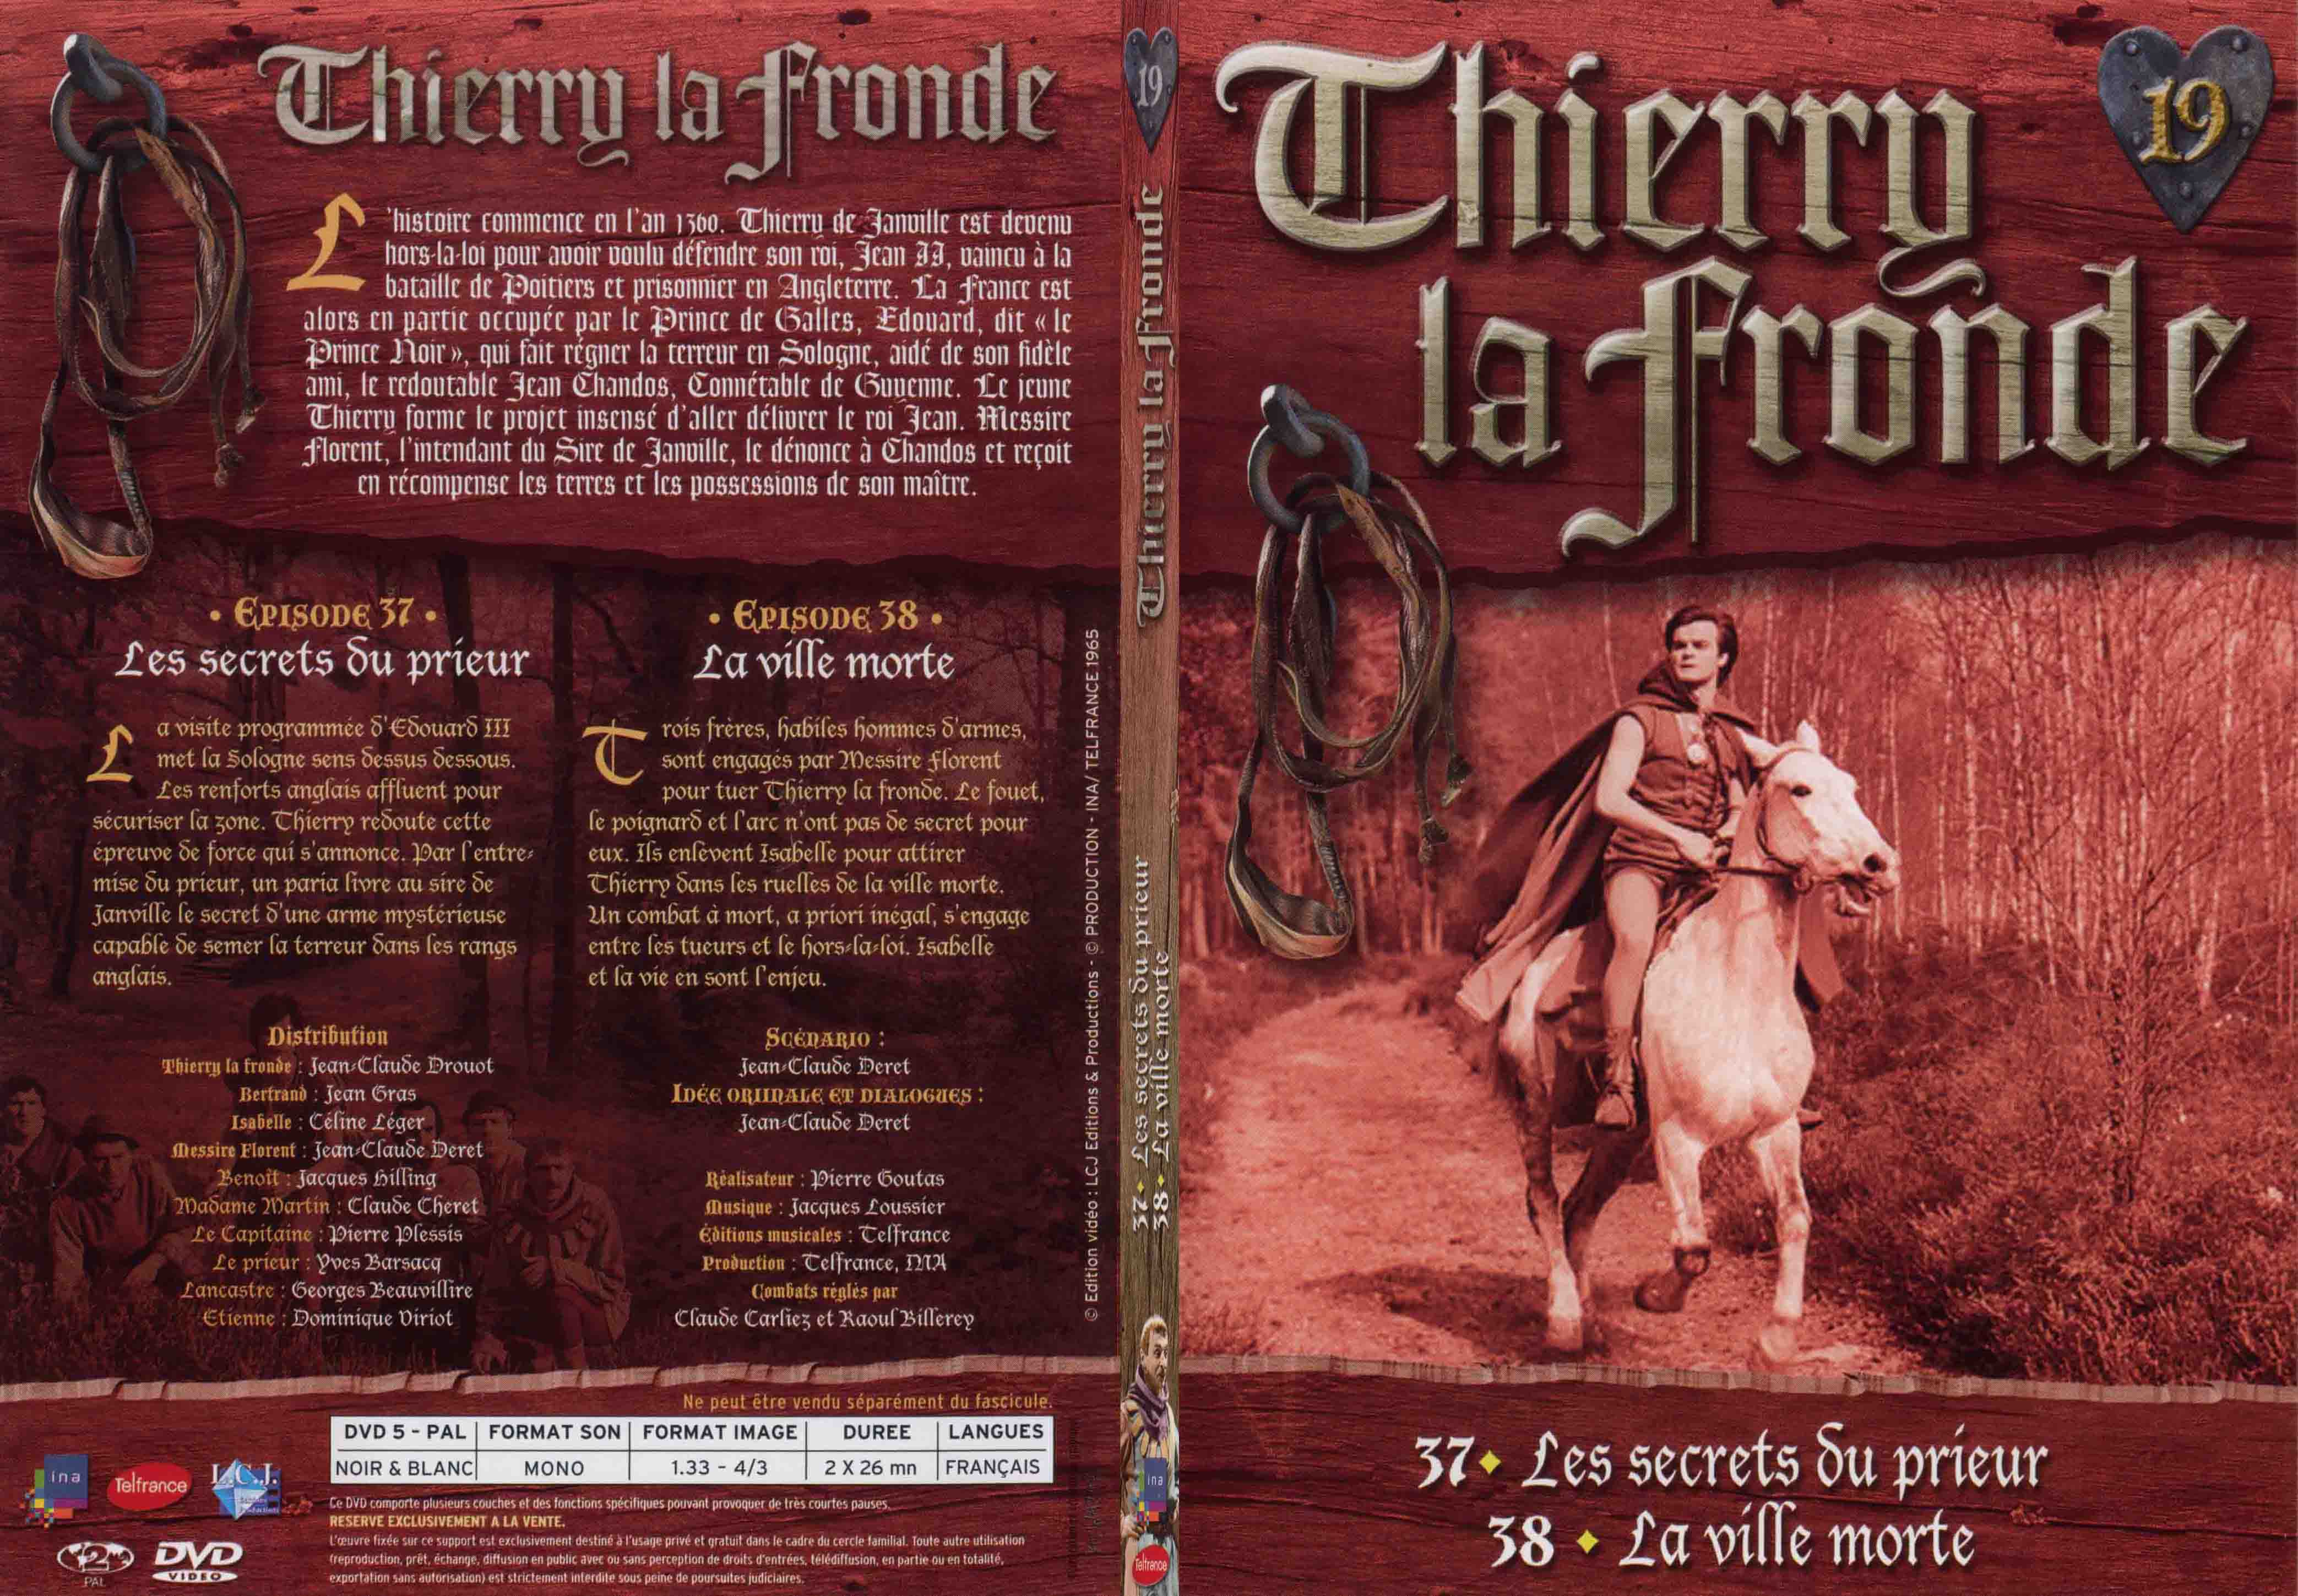 Jaquette DVD Thierry la Fronde vol 19 - SLIM